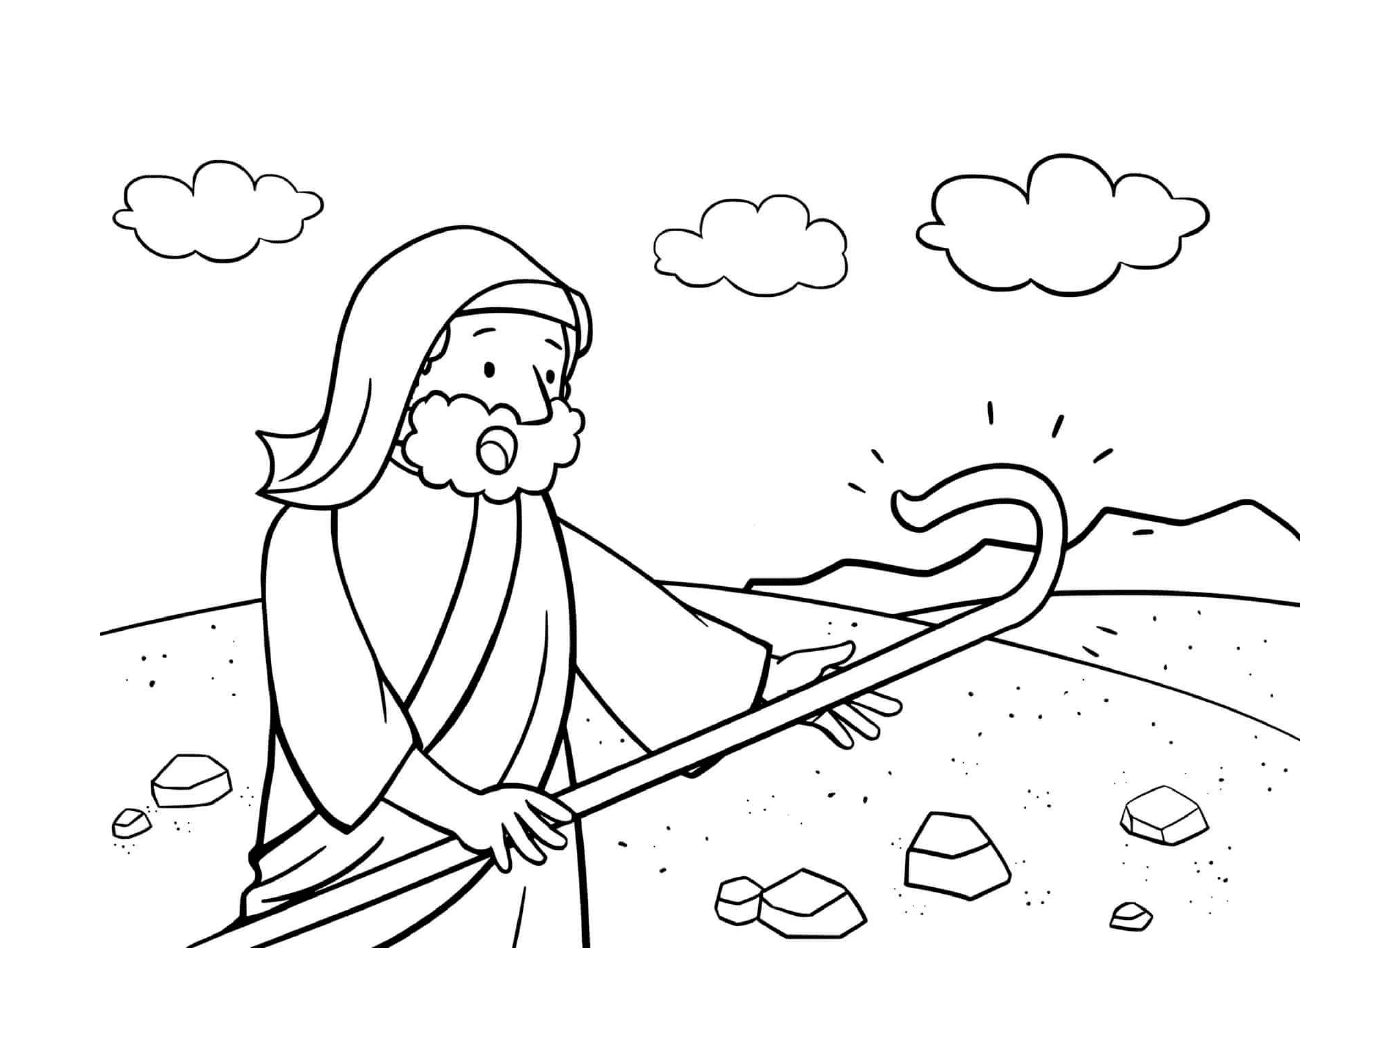   Doute de Moïse, homme tenant un bâton 